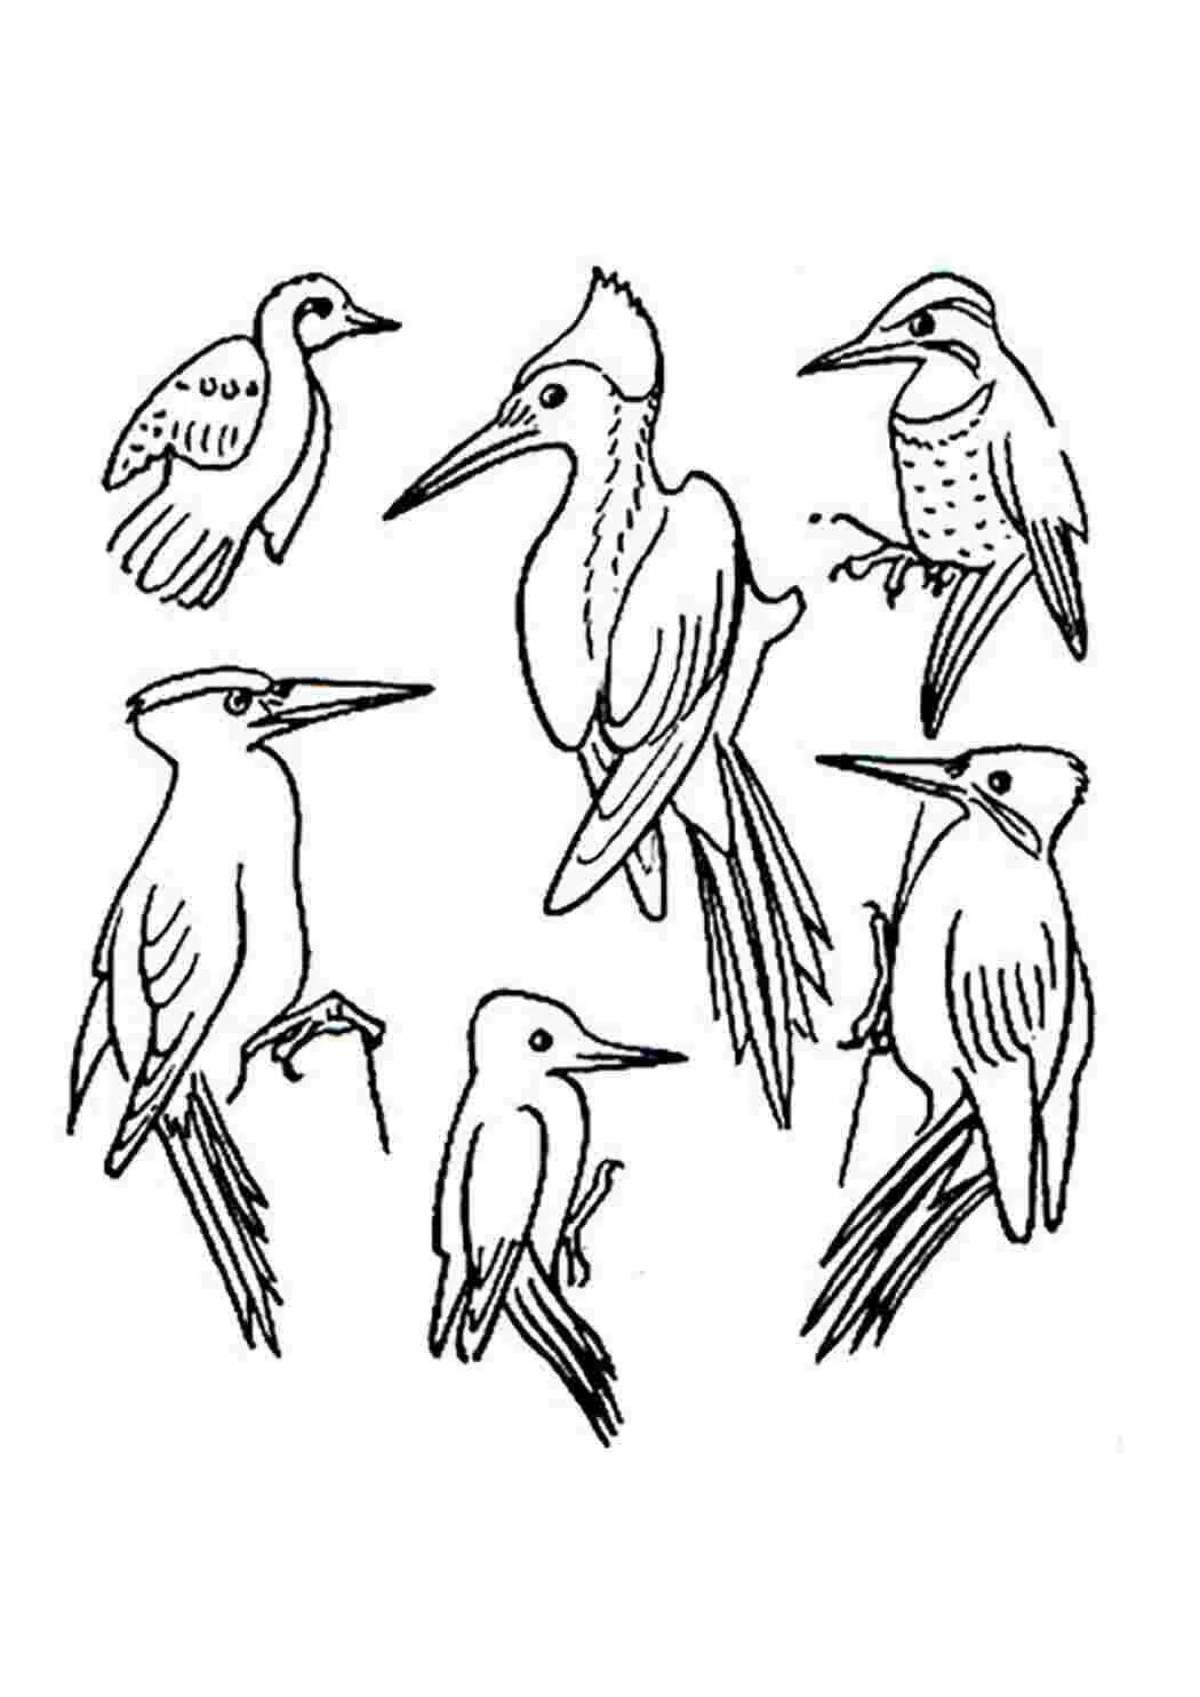 Woodpecker drawing #2